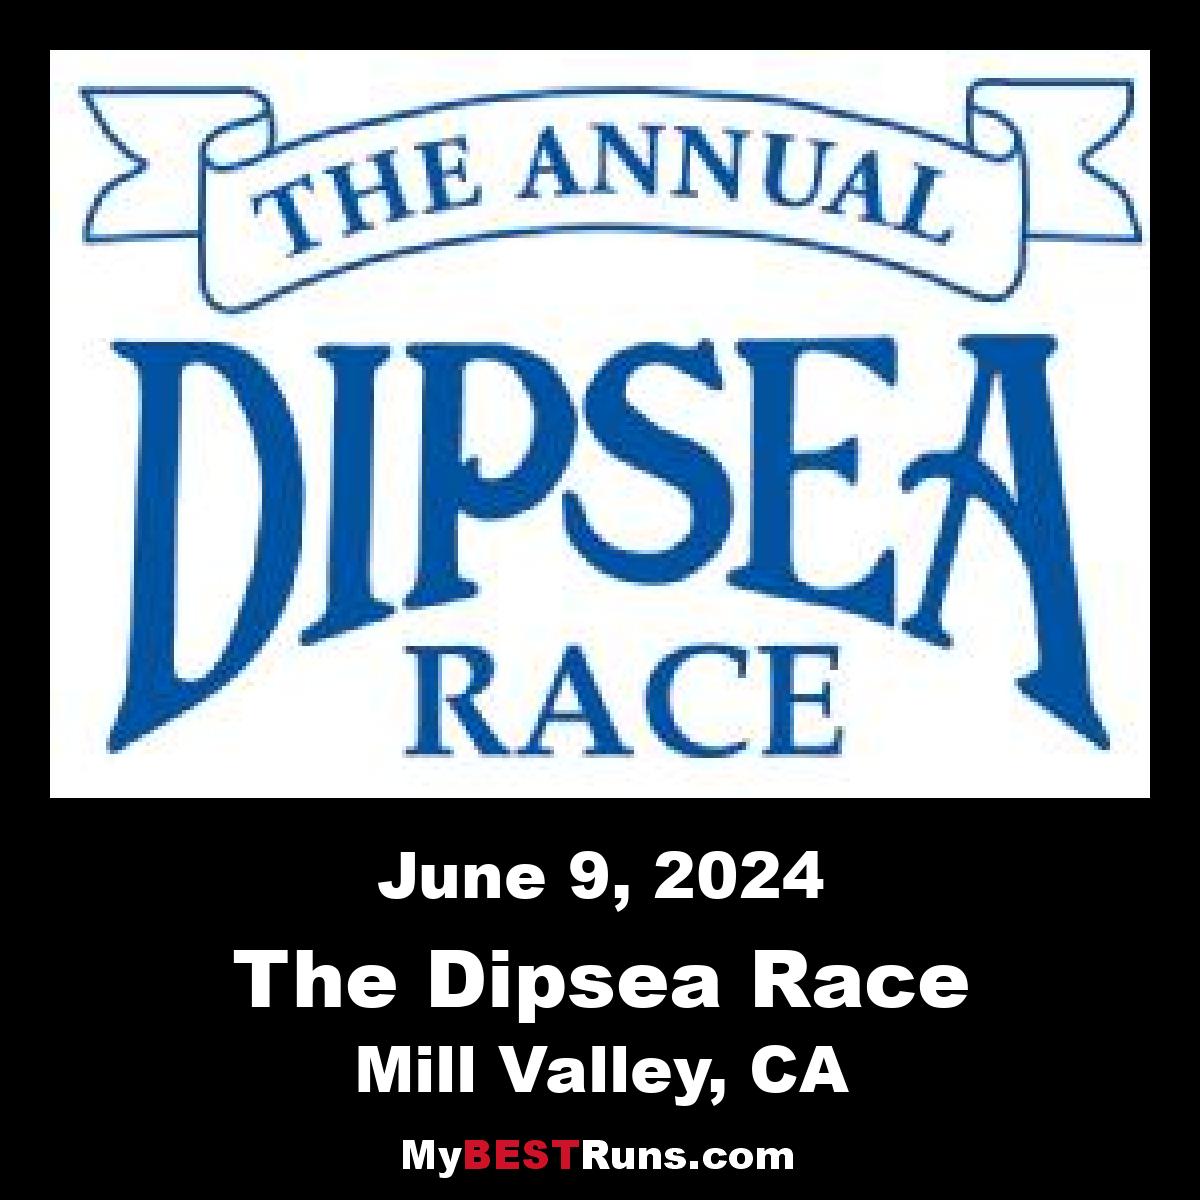 The Dipsea Race